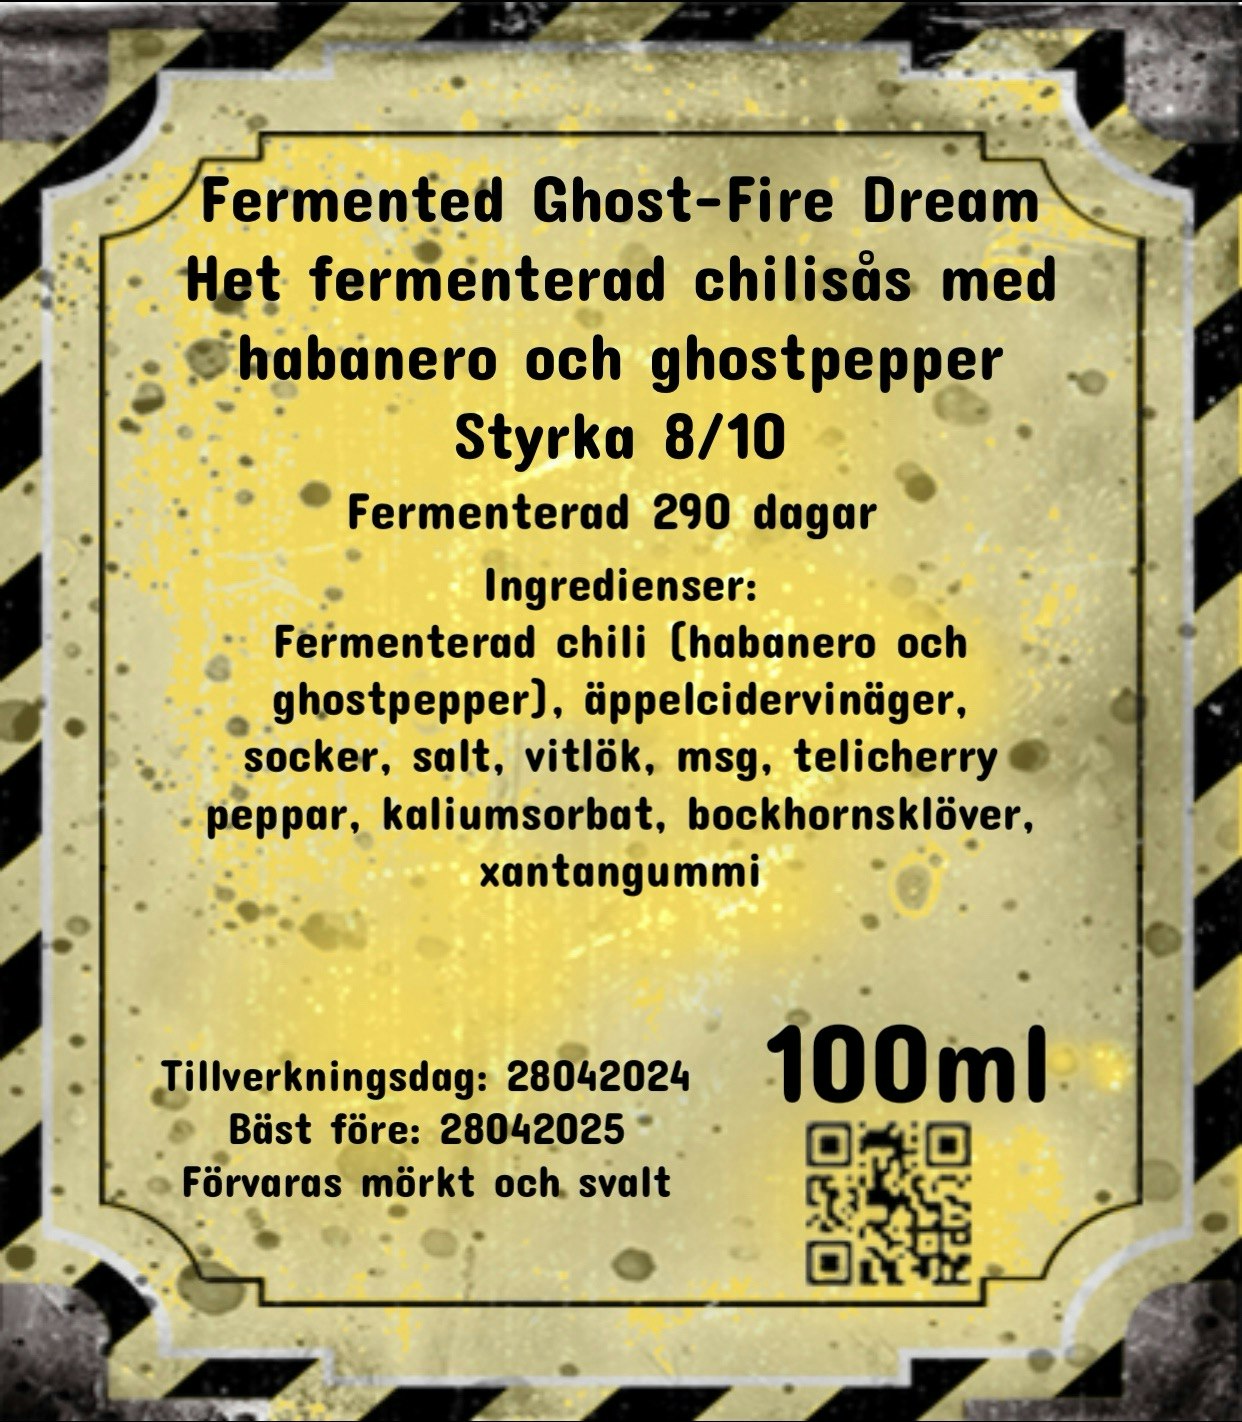 Fermented Ghost-Fire Dream